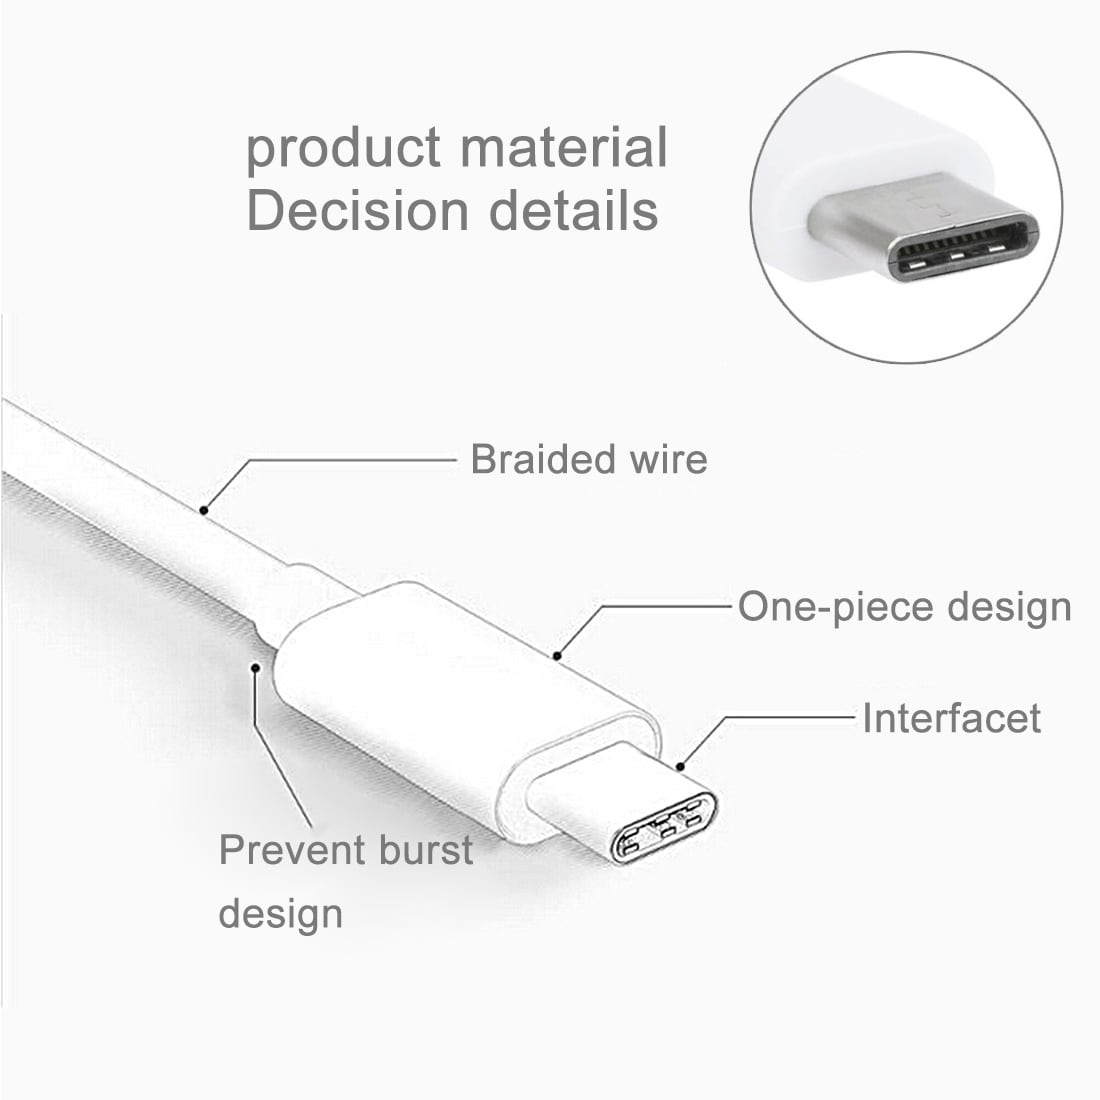 Stryktålig tygbeklädd Usbkabel USB typ C med metallhuvud - Storpack 5st i olika färger